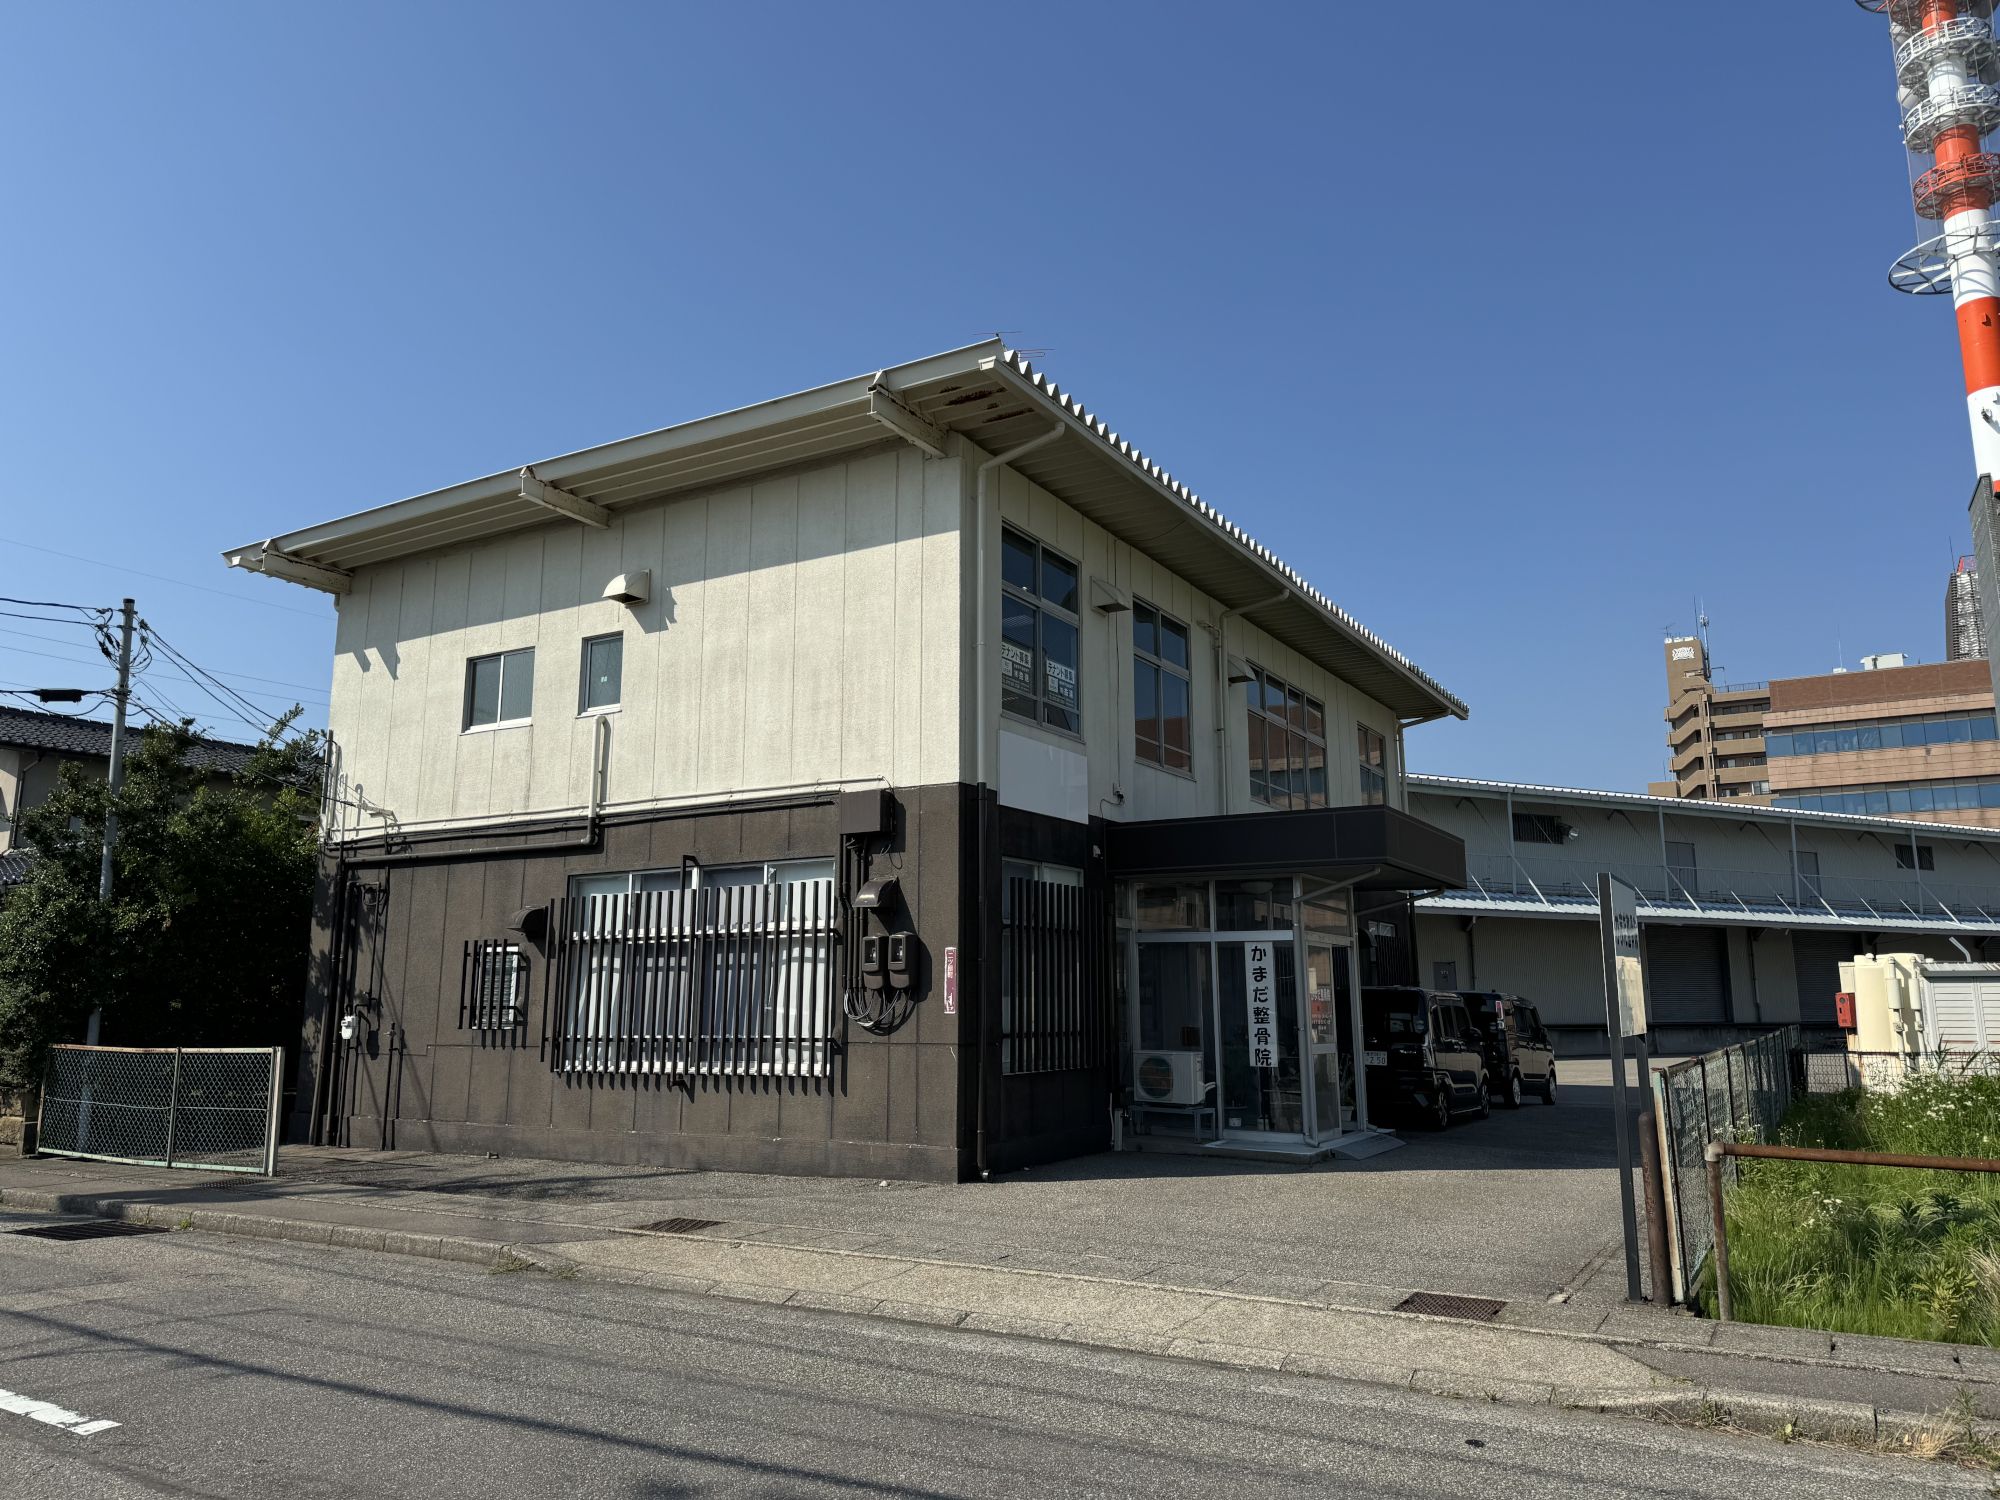 石川県金沢市二ツ屋町に貸事務所物件が新着しました。